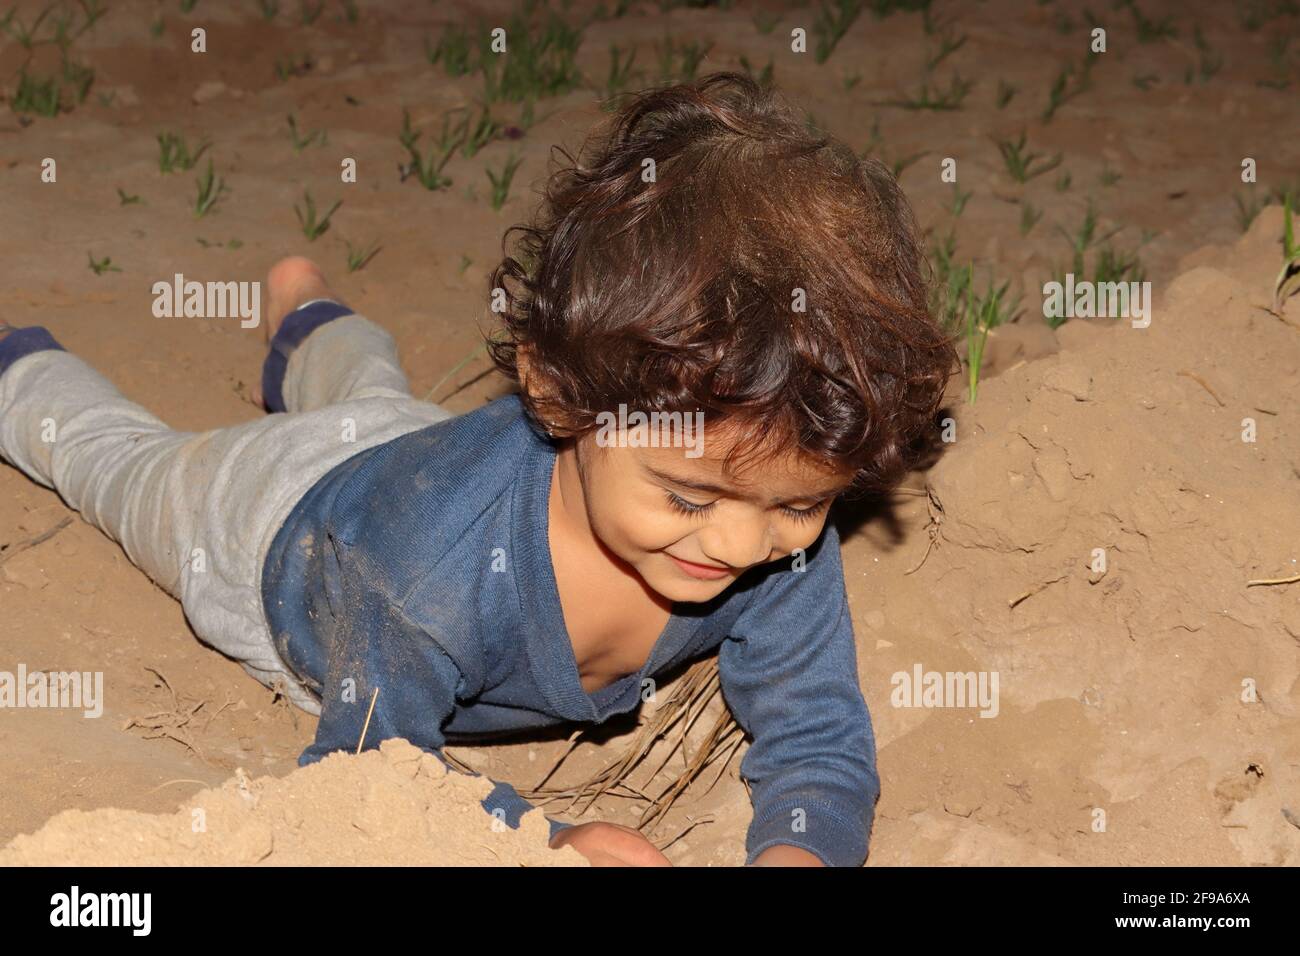 Nahaufnahme eines indischen Kindes, das mit Erde spielt und auf dem Feld auf dem Boden liegt, Konzept bis zur Kindheit. Stockfoto